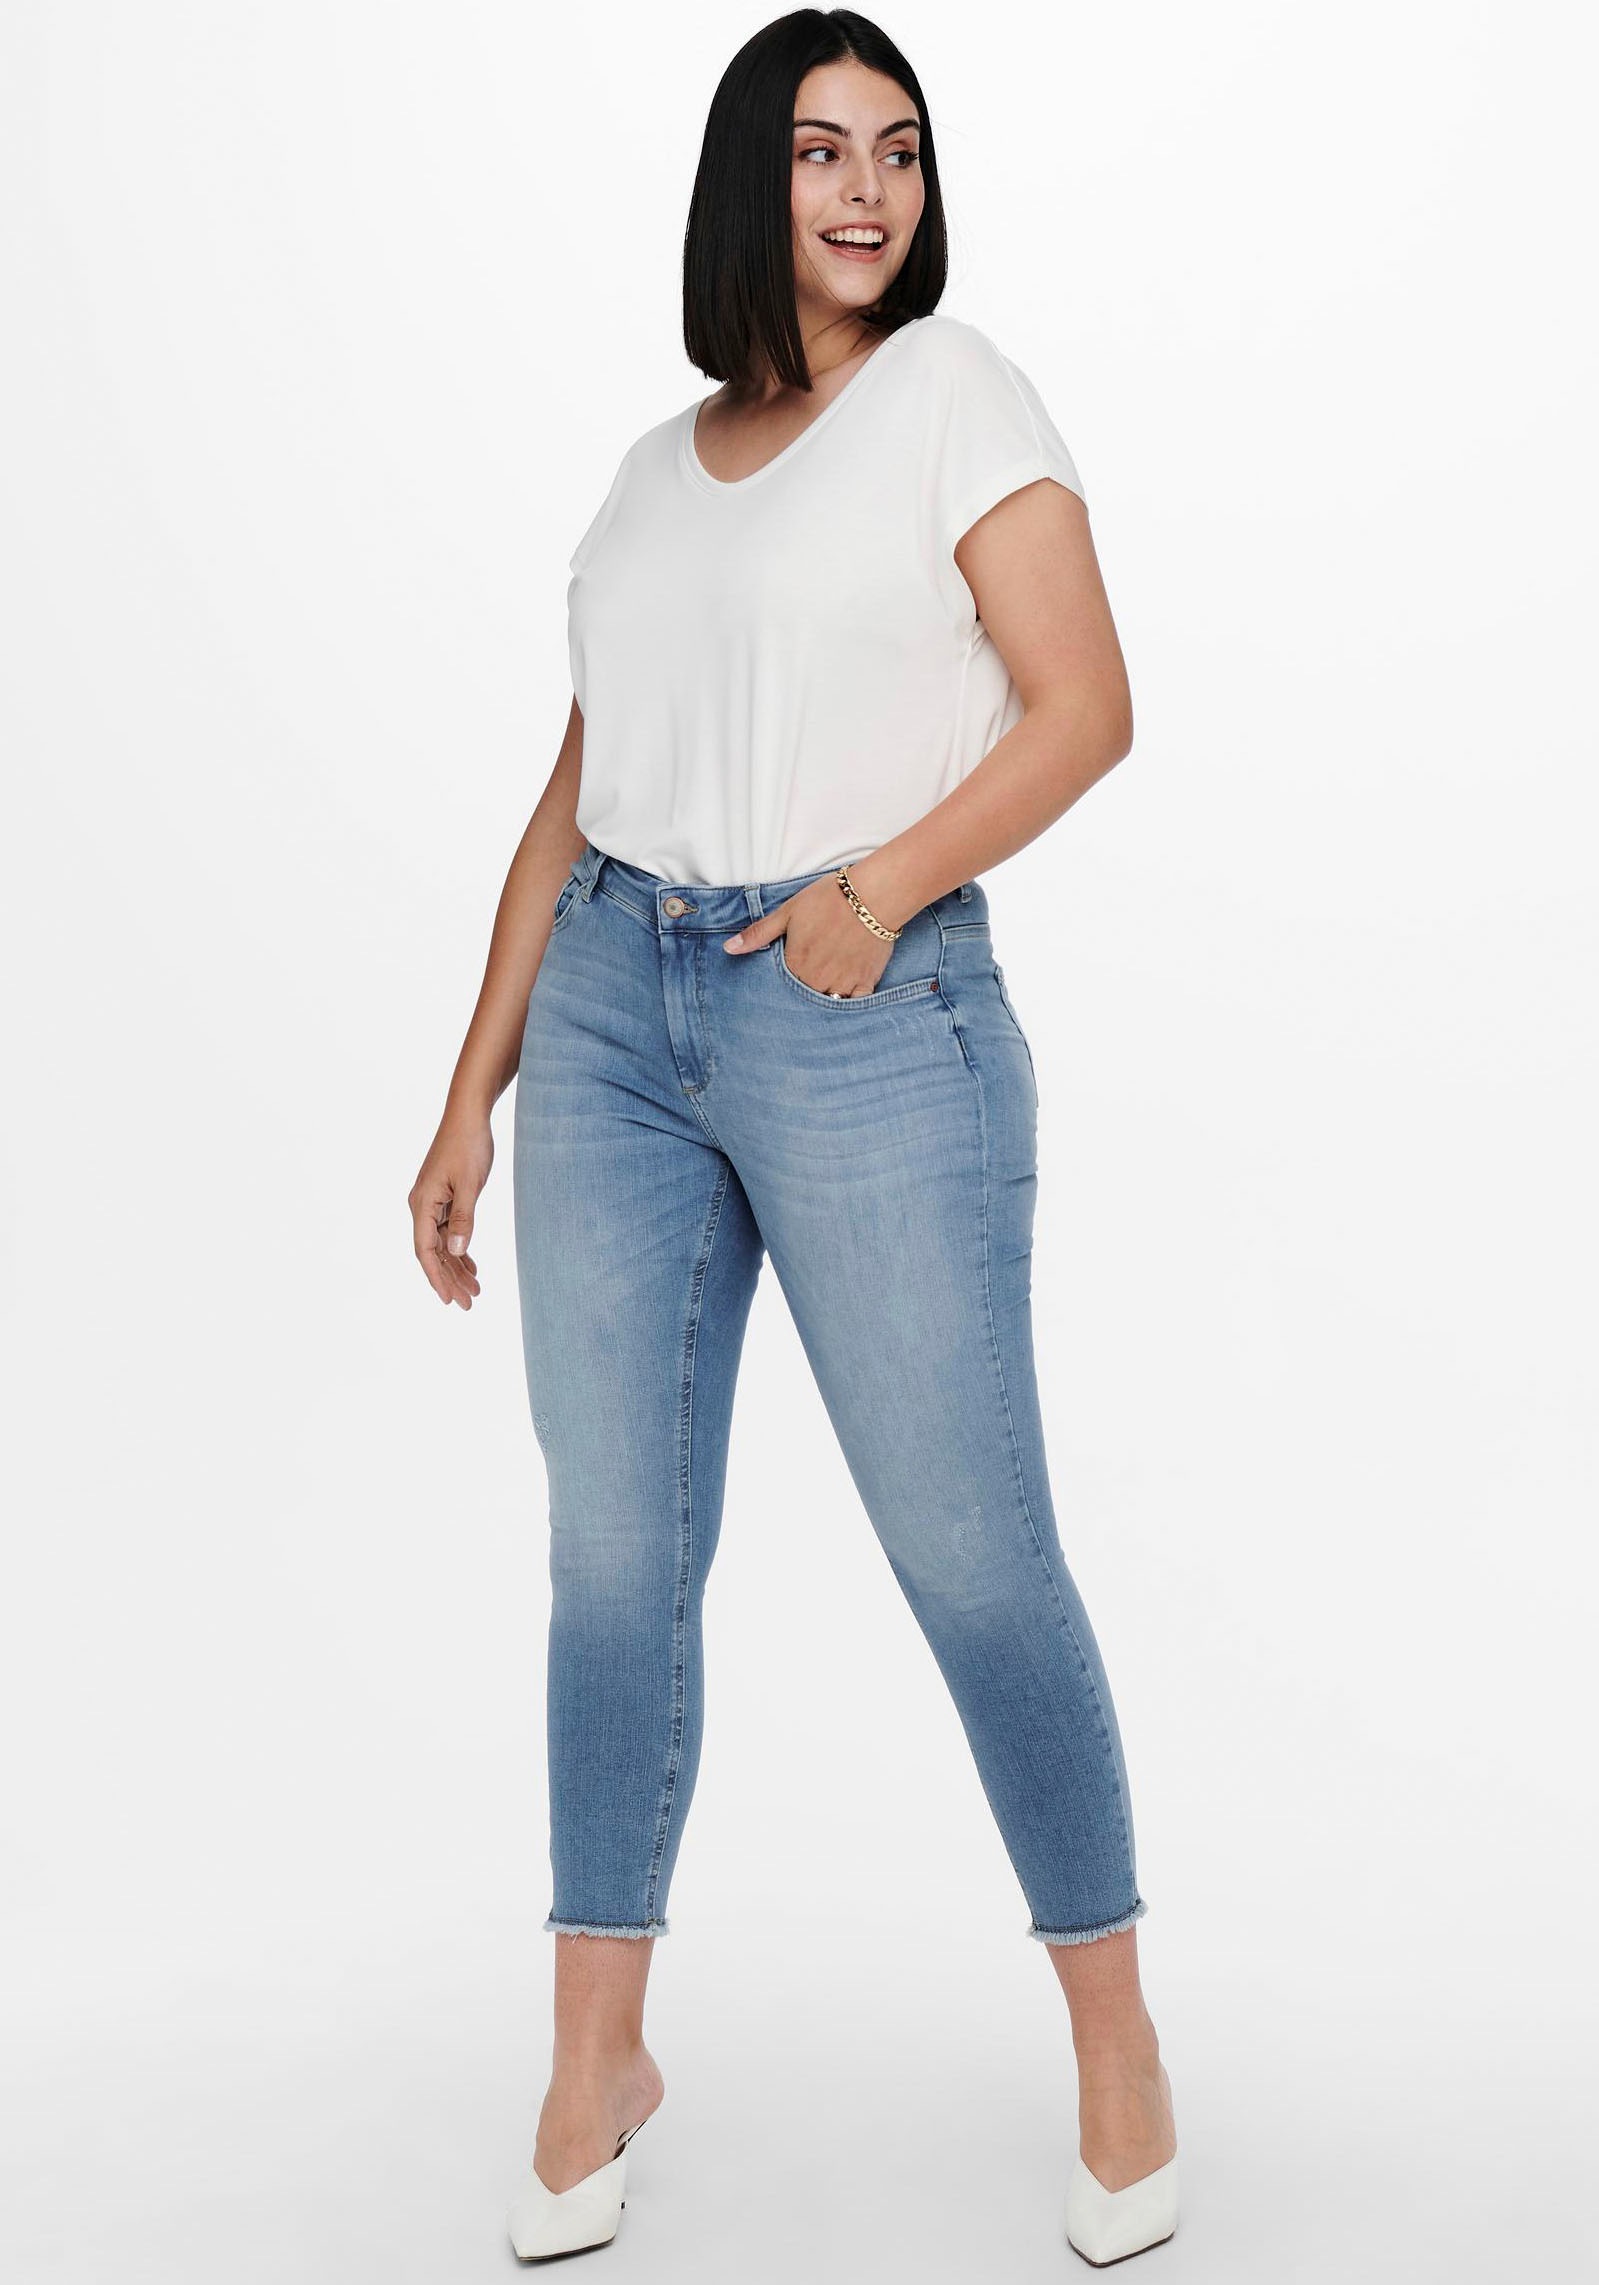 OTTO Shop Jeans Online kaufen im